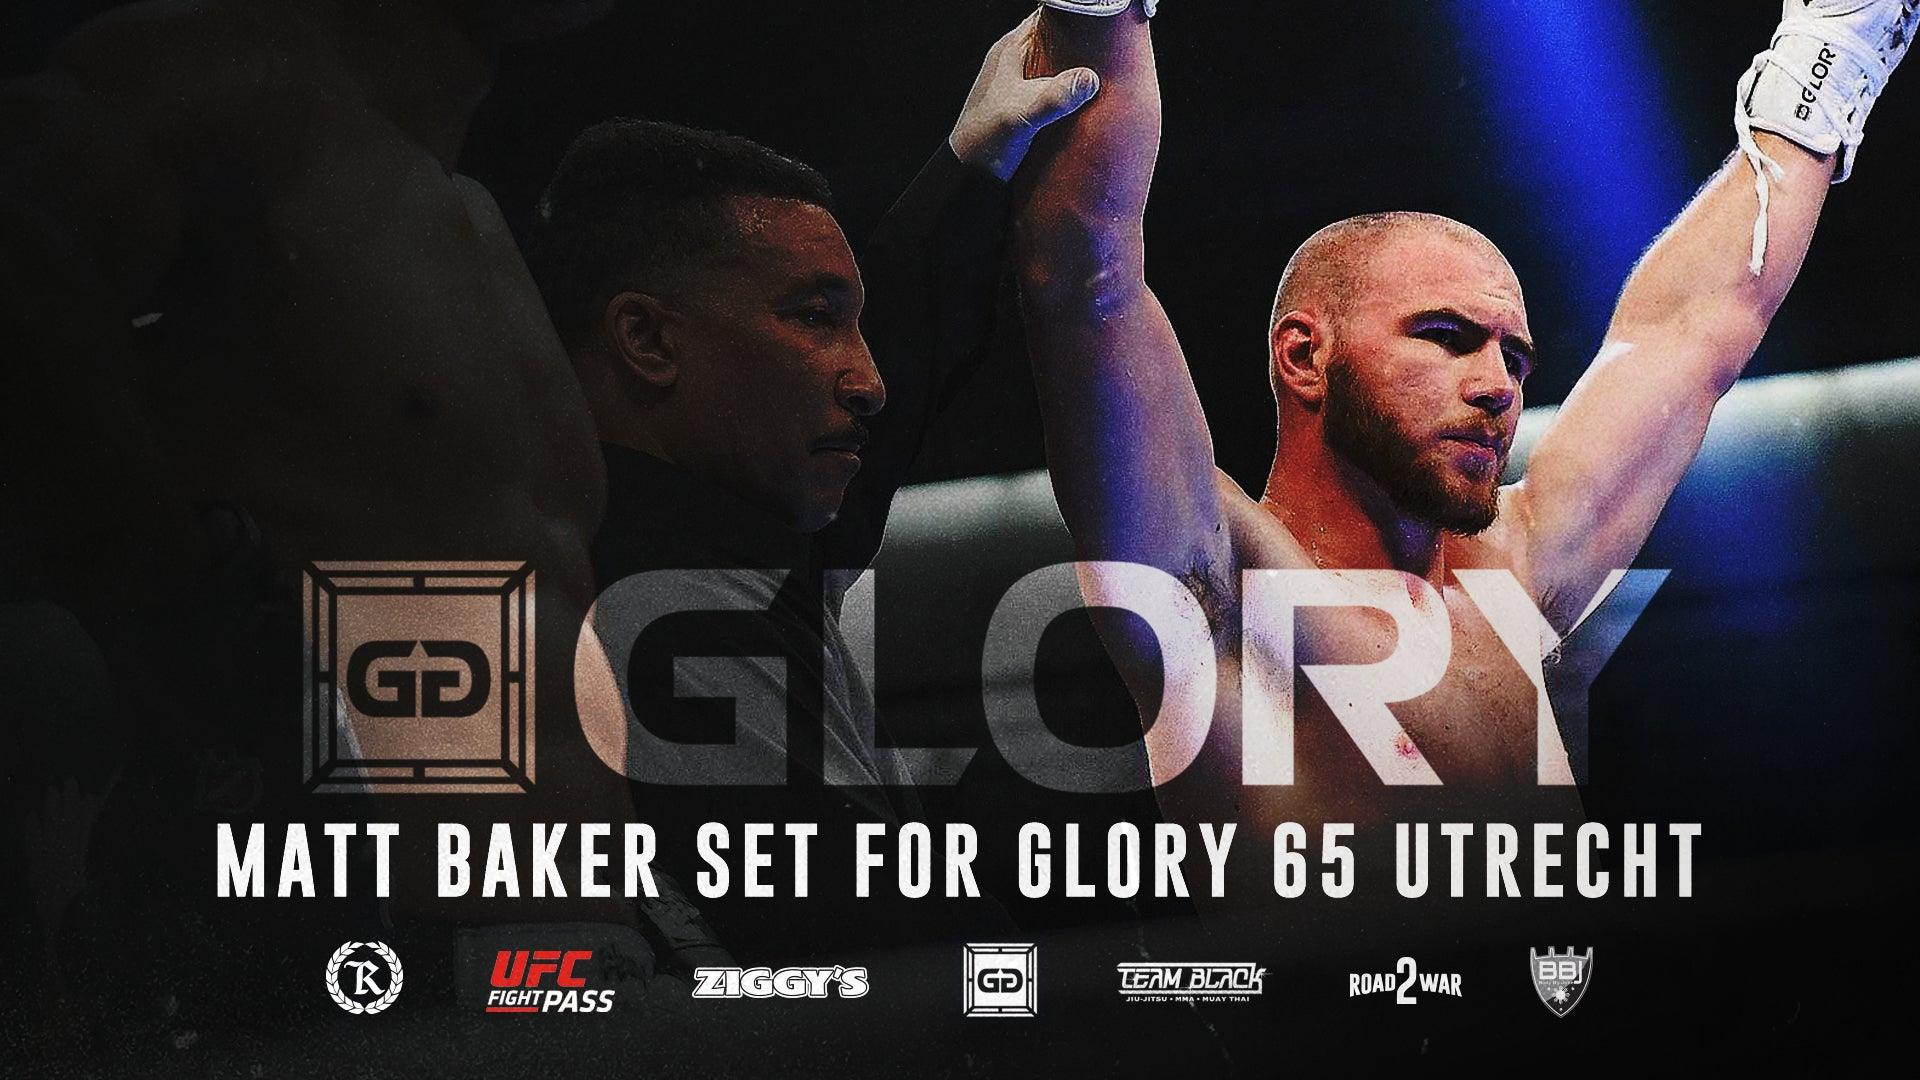 Kickboxer Matt Baker Set for Glory 65 Utrecht - Represent Ltd.™